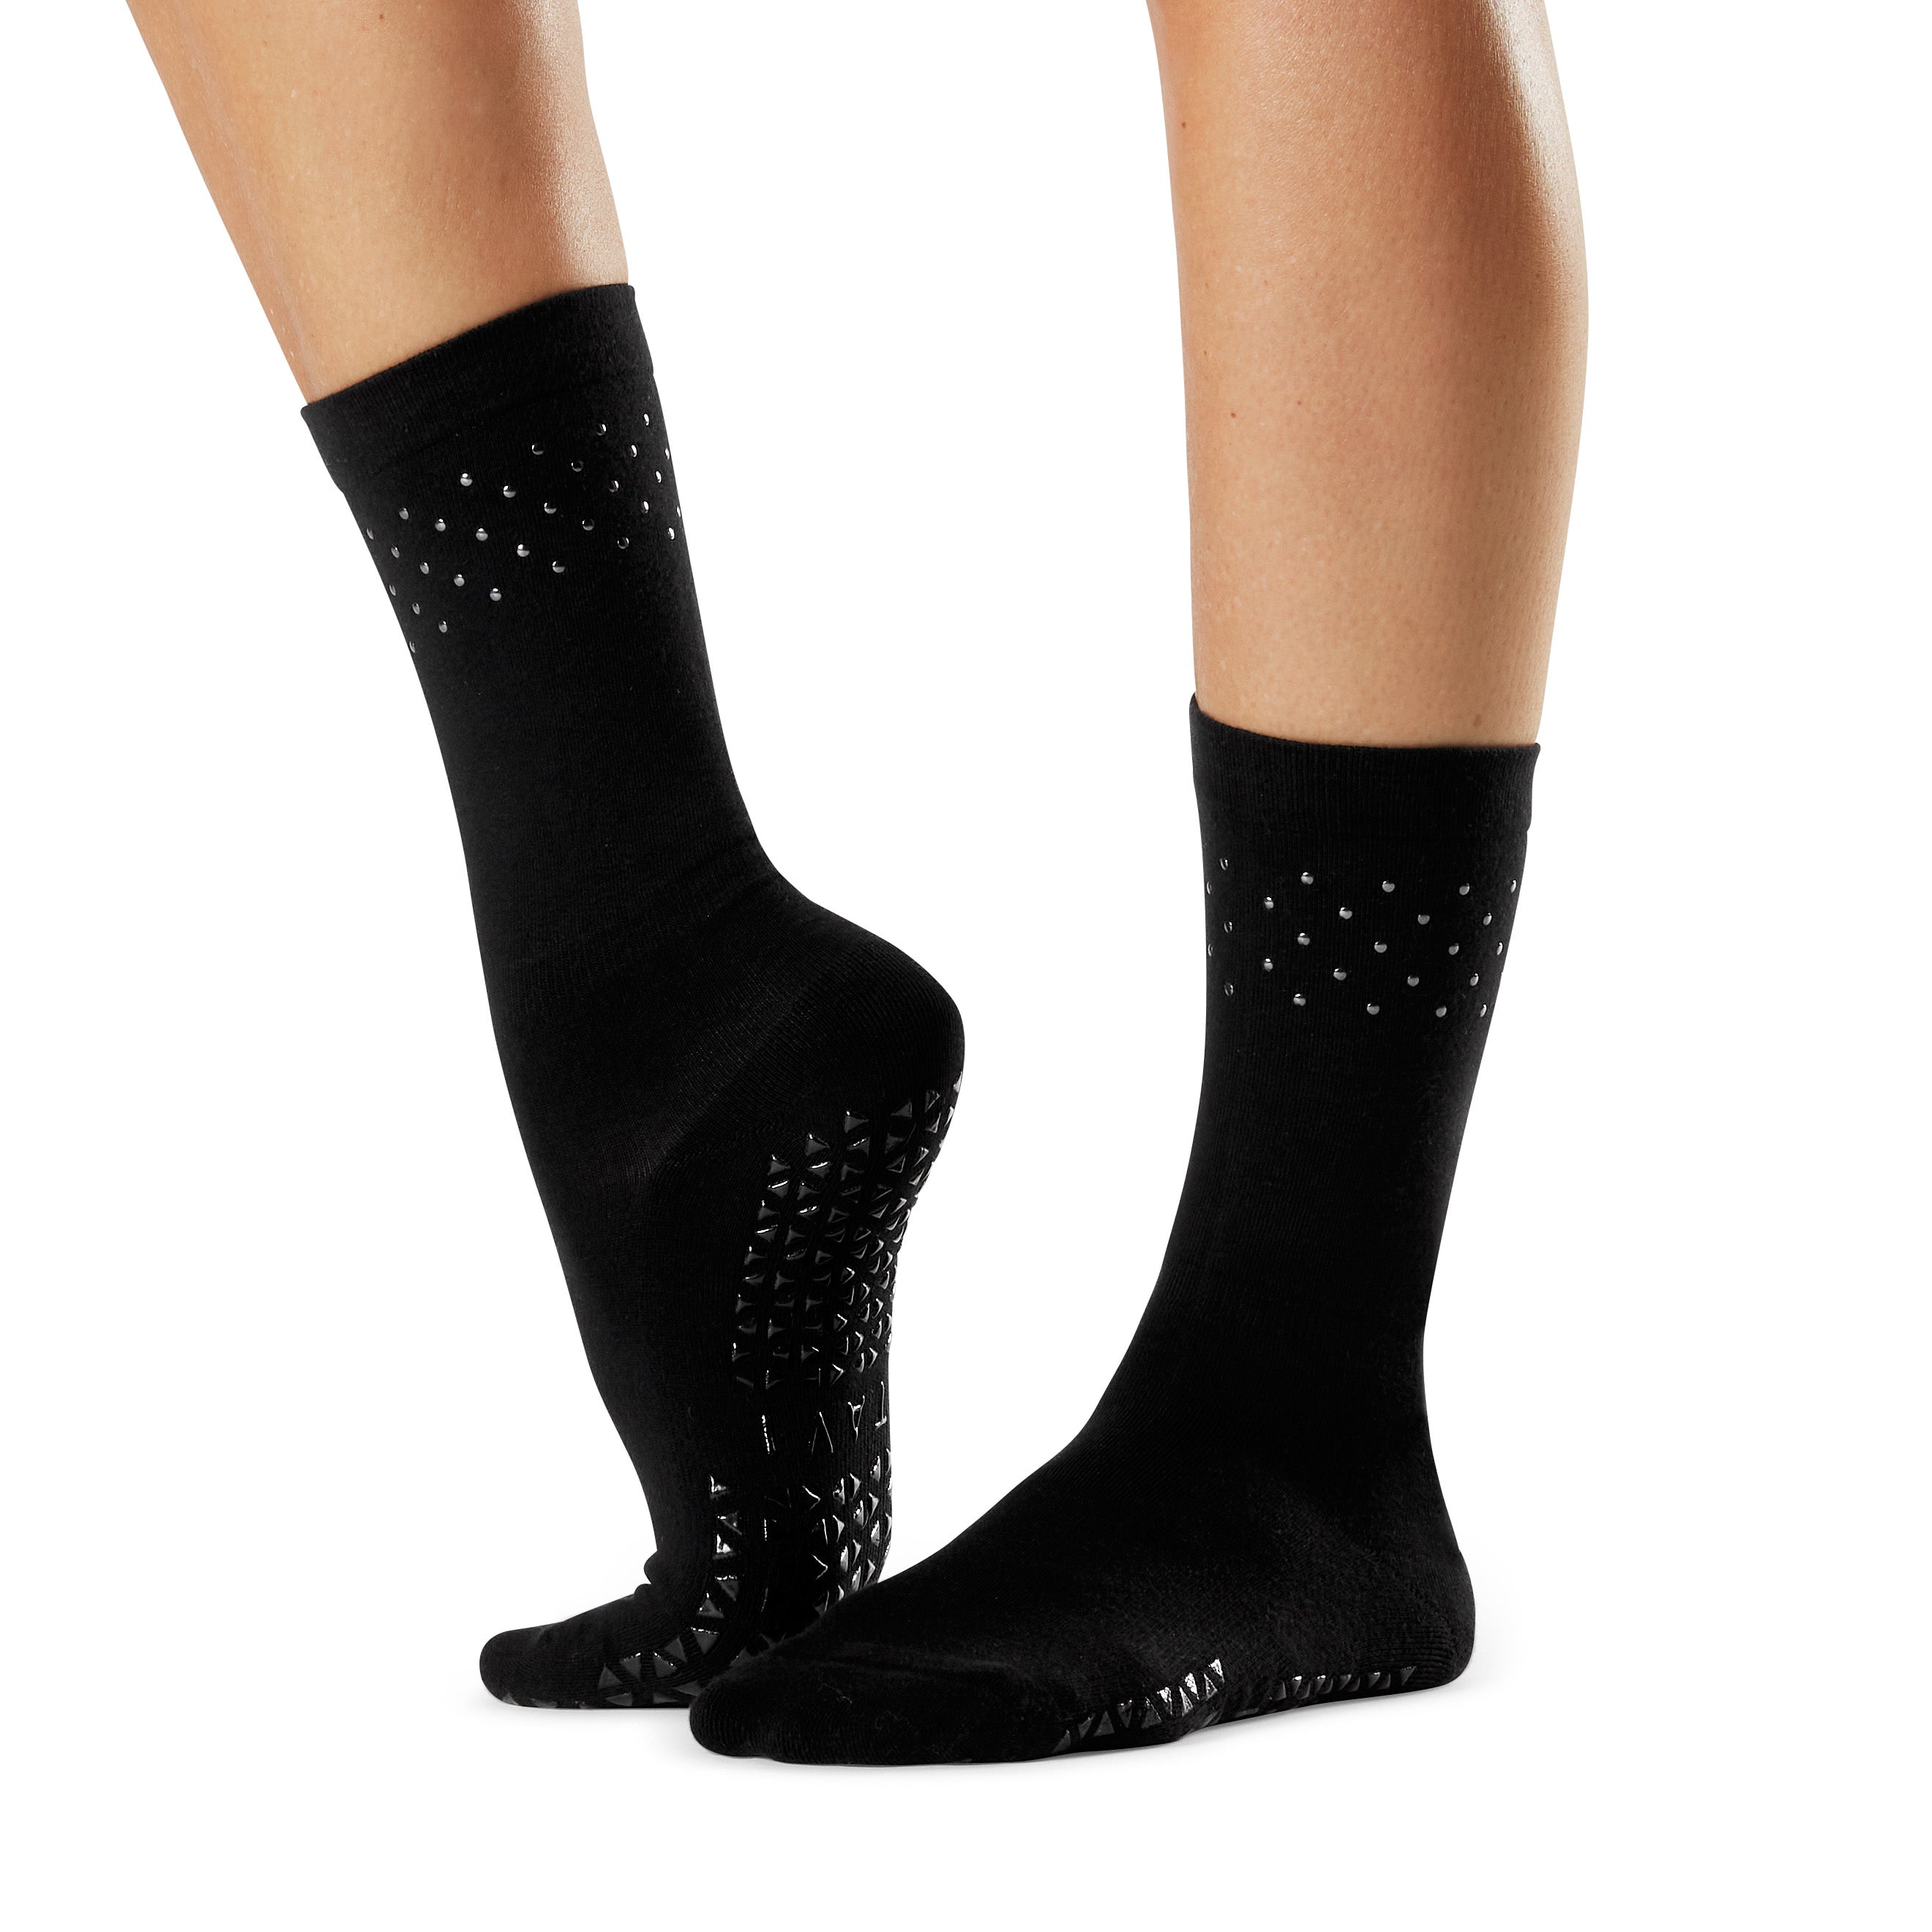 Performance Gripper Ankle Socks 2-Pack for Women